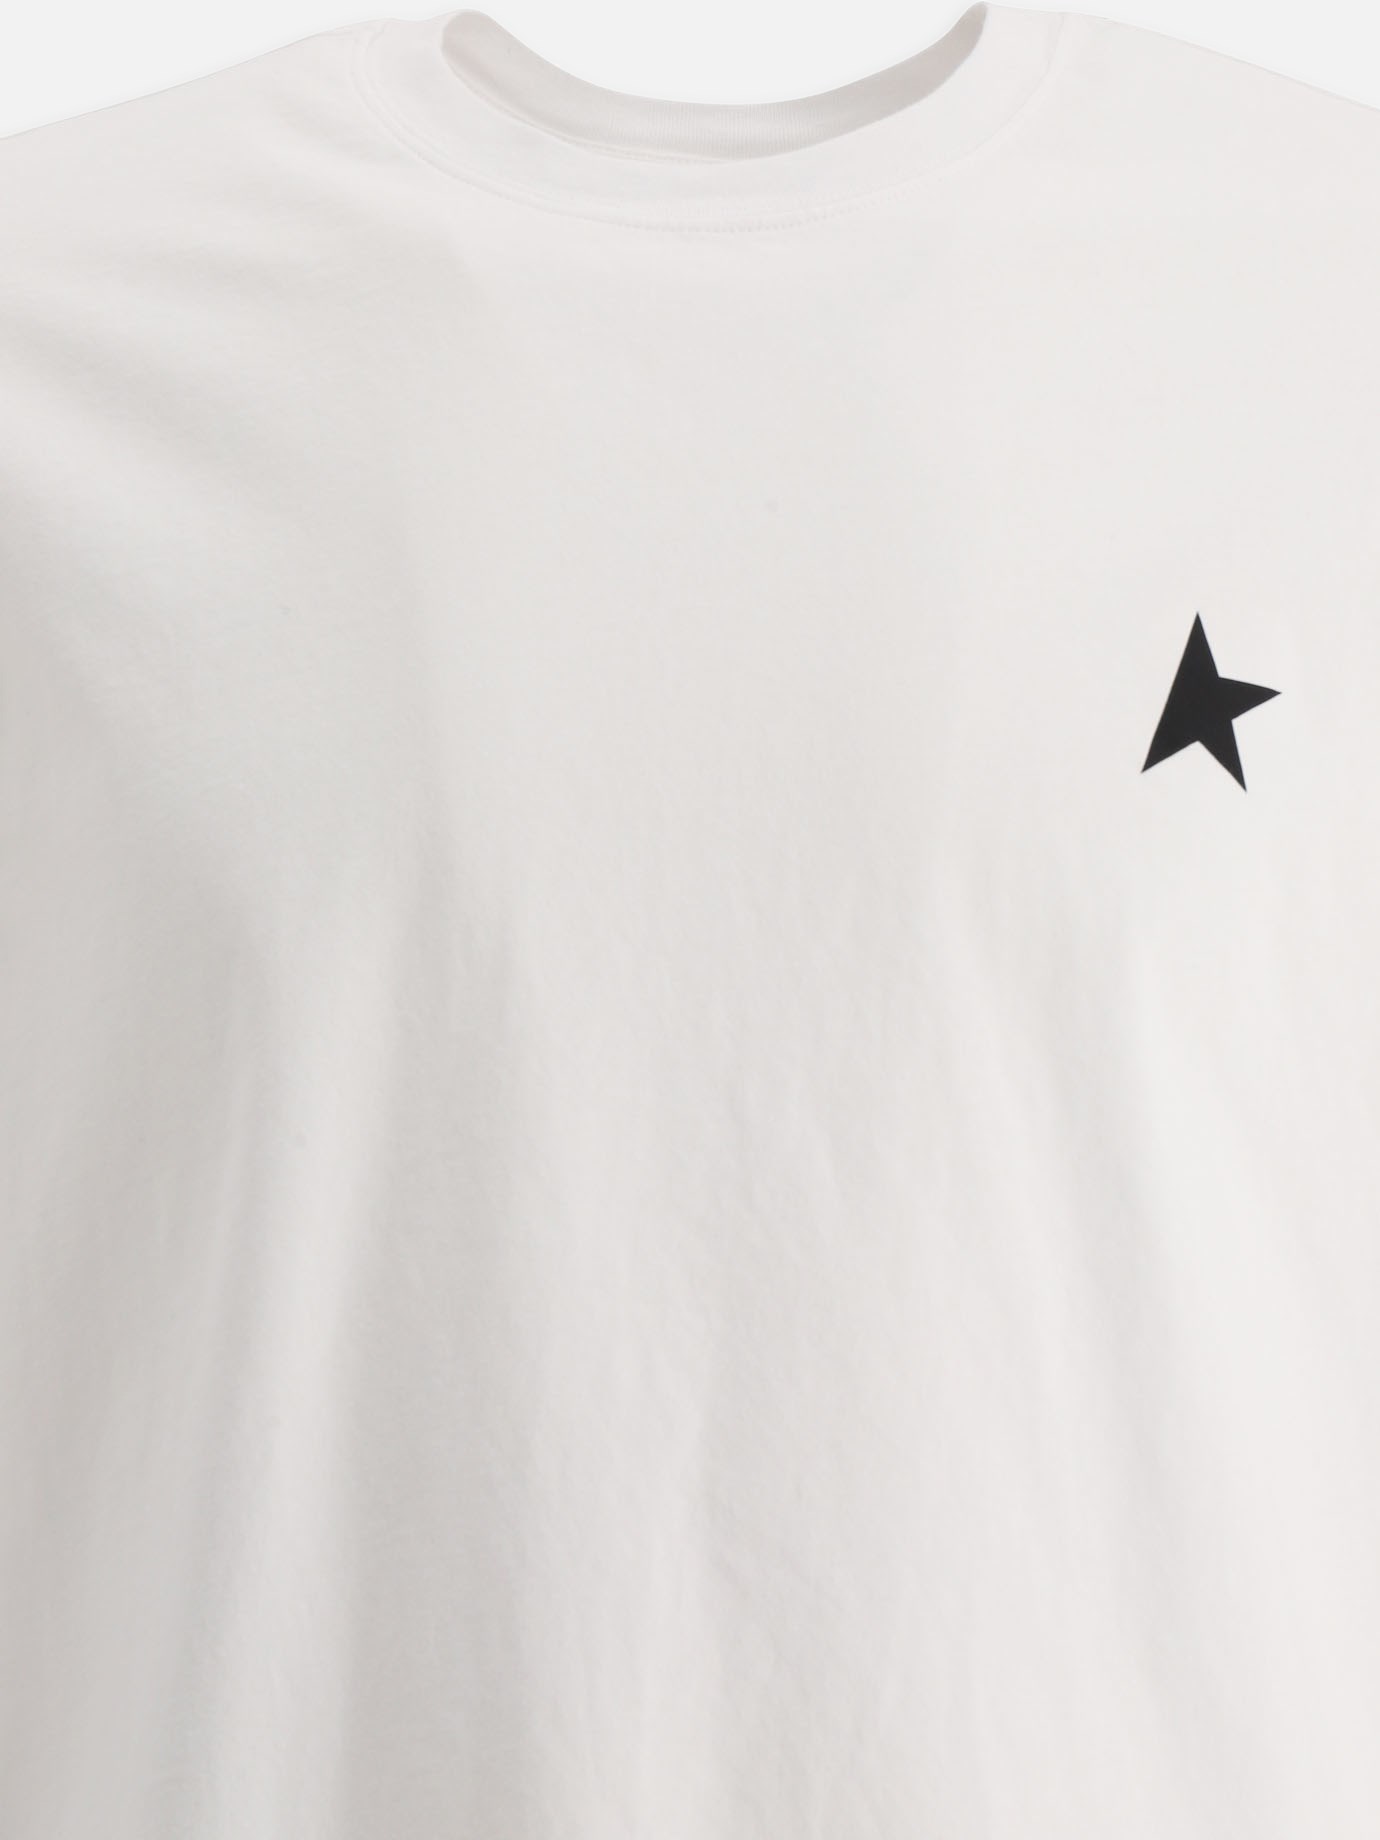  Star  t-shirt by Golden Goose